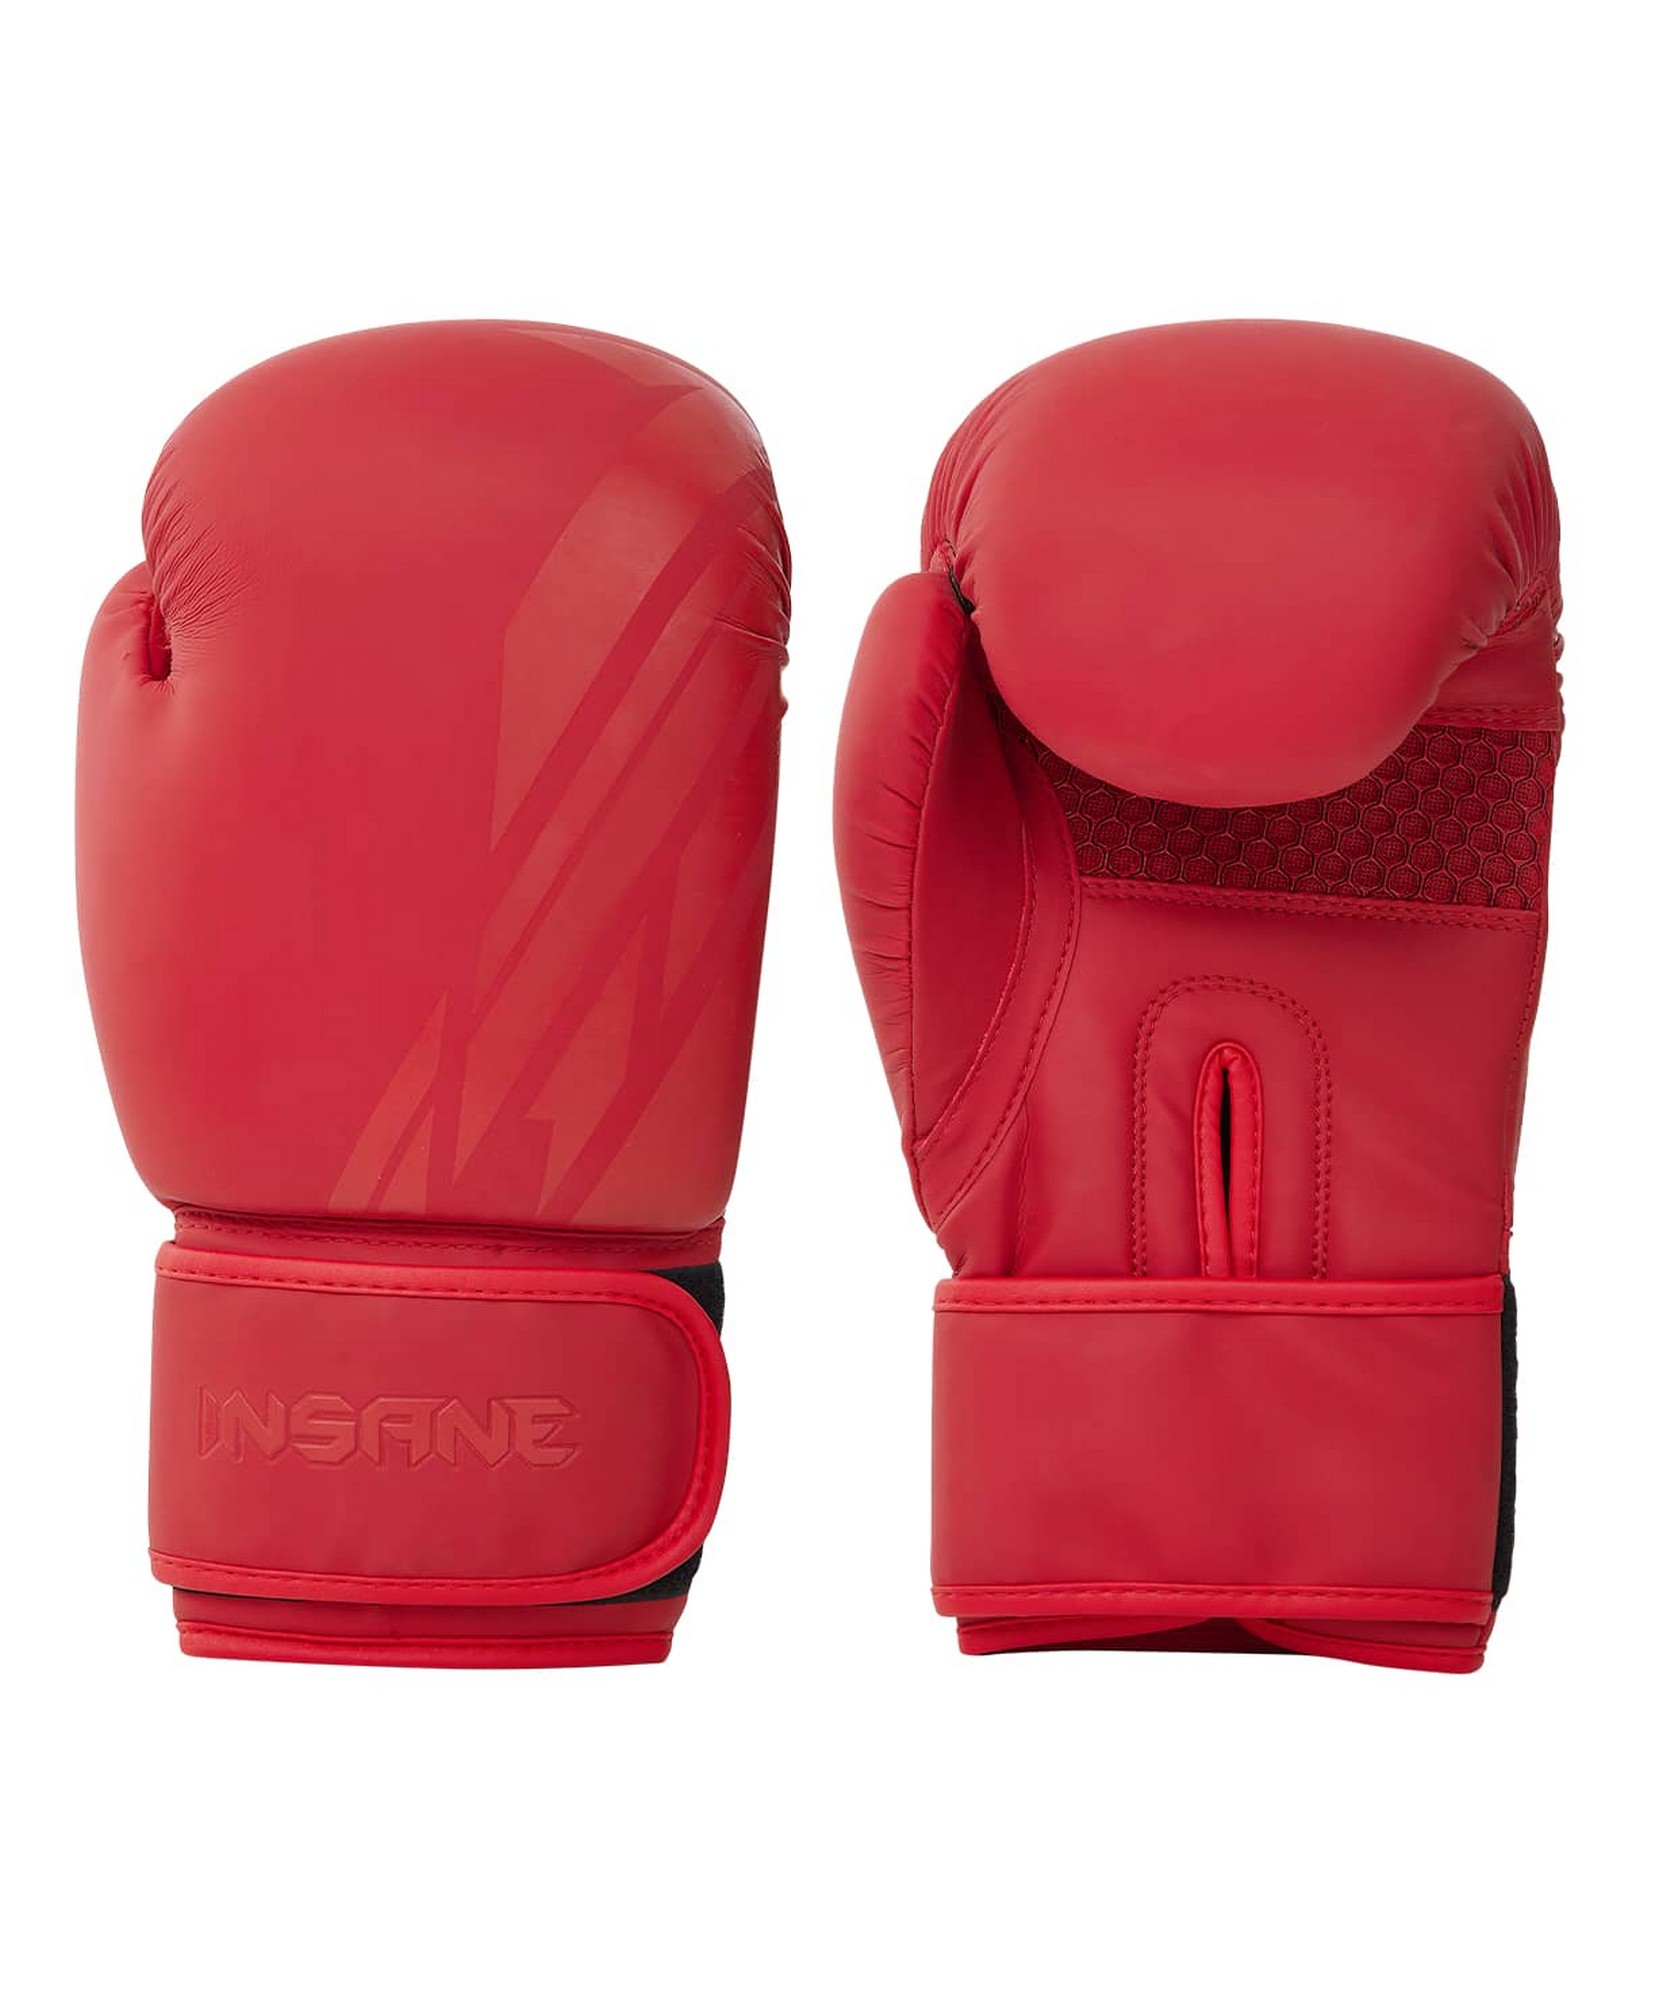 Перчатки боксерские Insane ORO, ПУ, 10 oz, красный 1663_2000